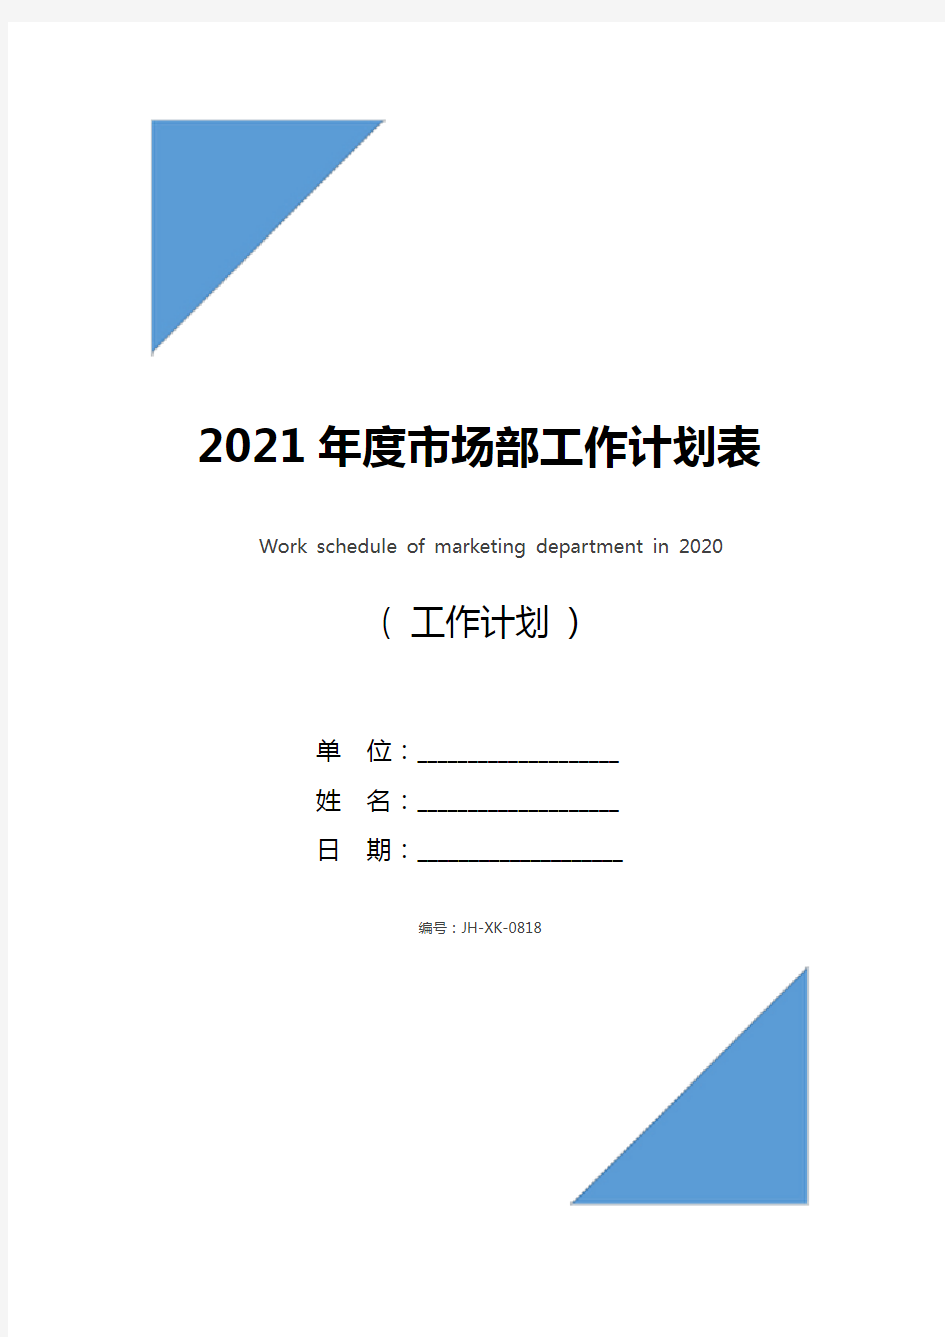 2021年度市场部工作计划表(通用版)